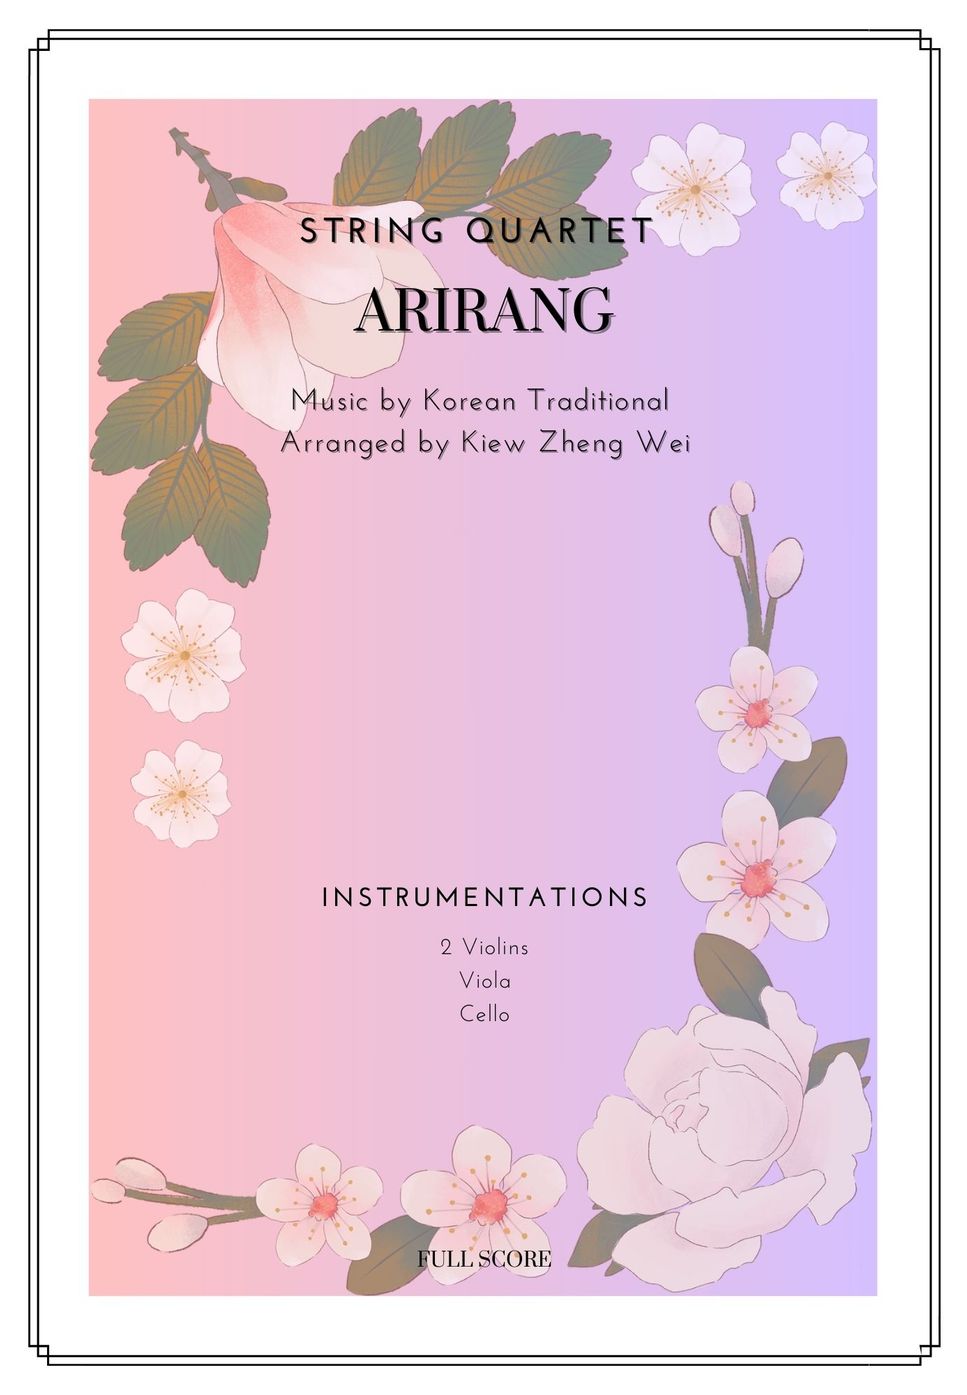 Arirang for String Quartet by KIEW ZHENG WEI